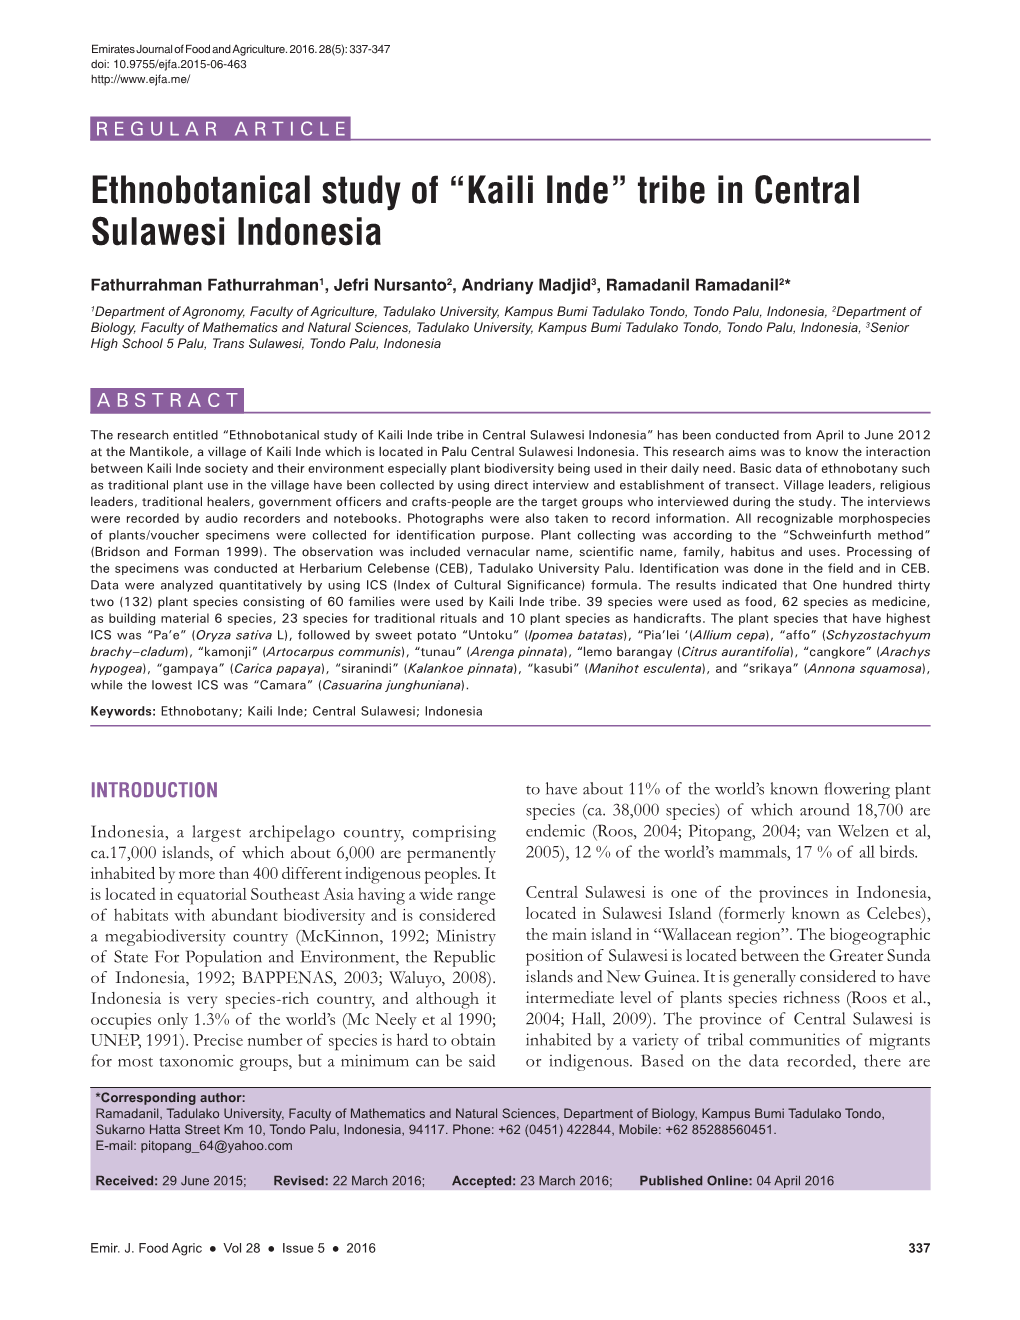 Ethnobotanical Study of “Kaili Inde” Tribe in Central Sulawesi Indonesia